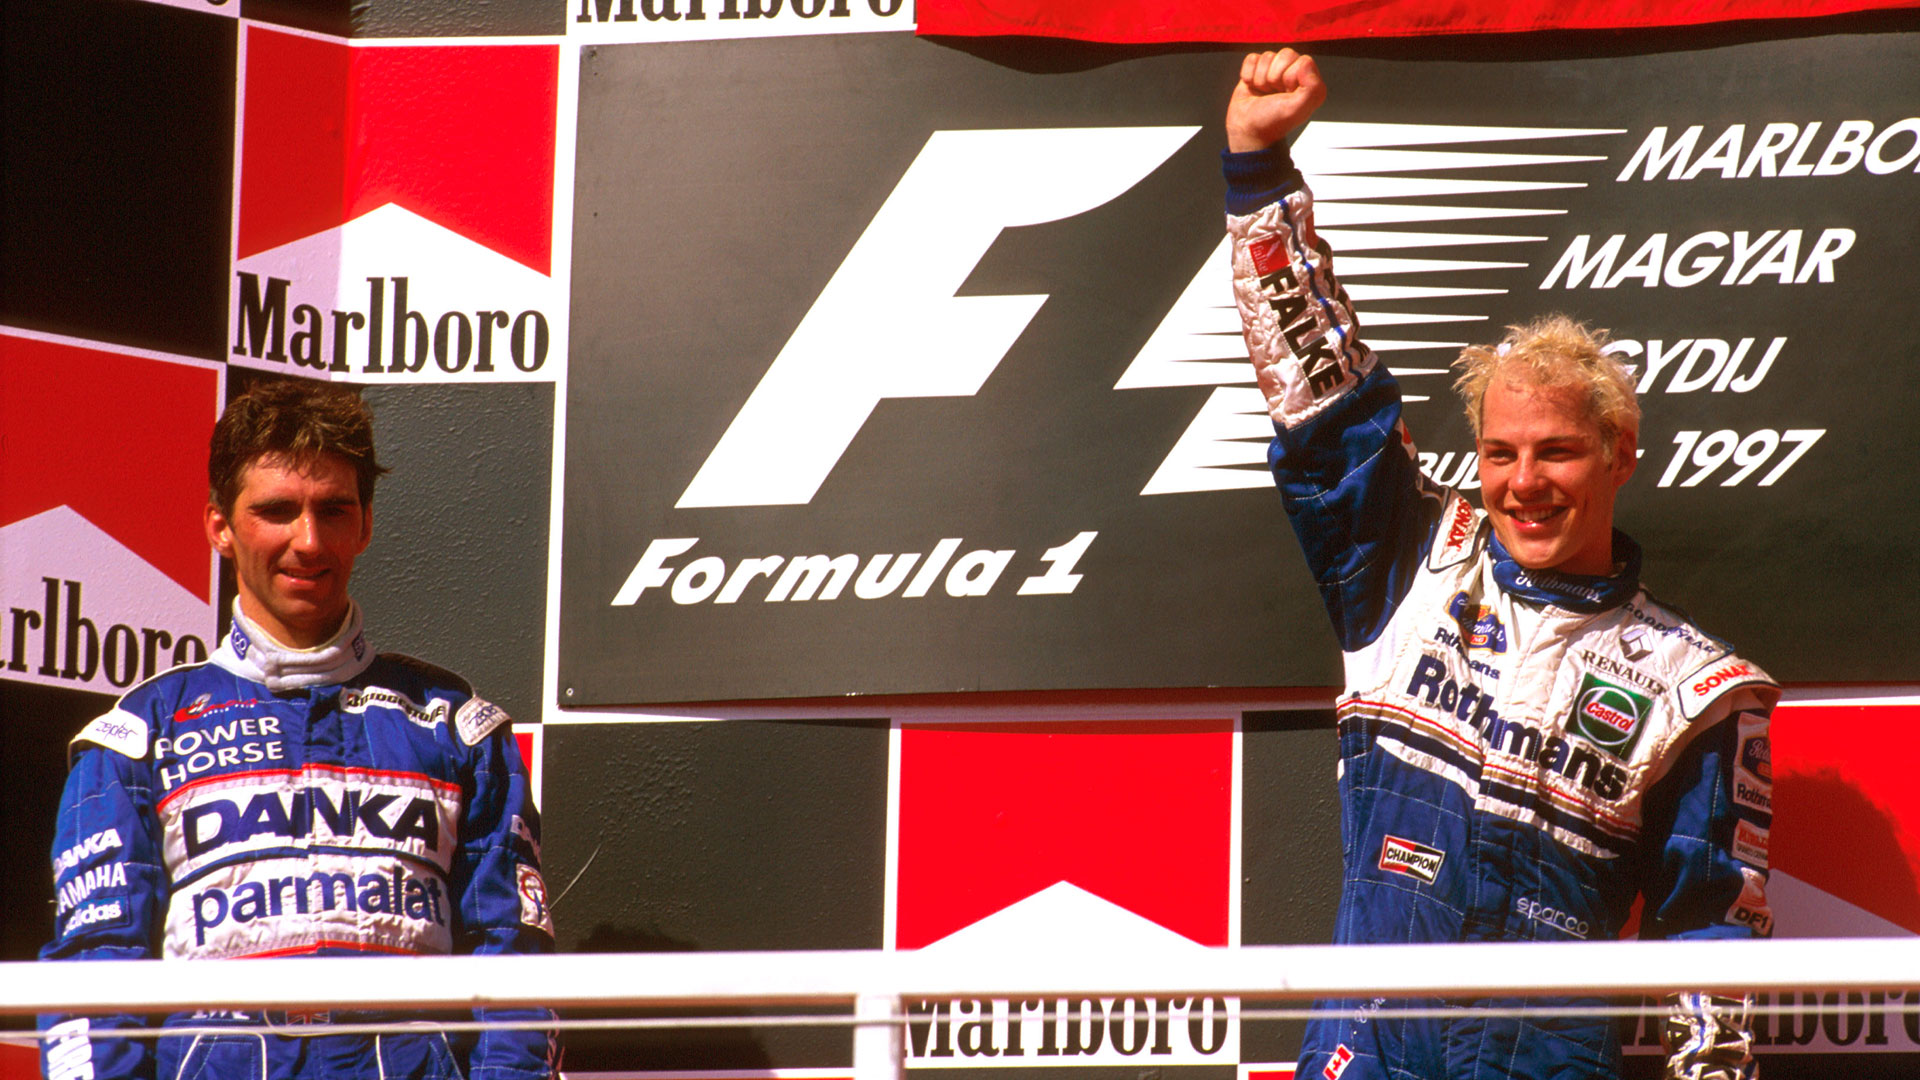 Gilles and Jacques Villeneuve